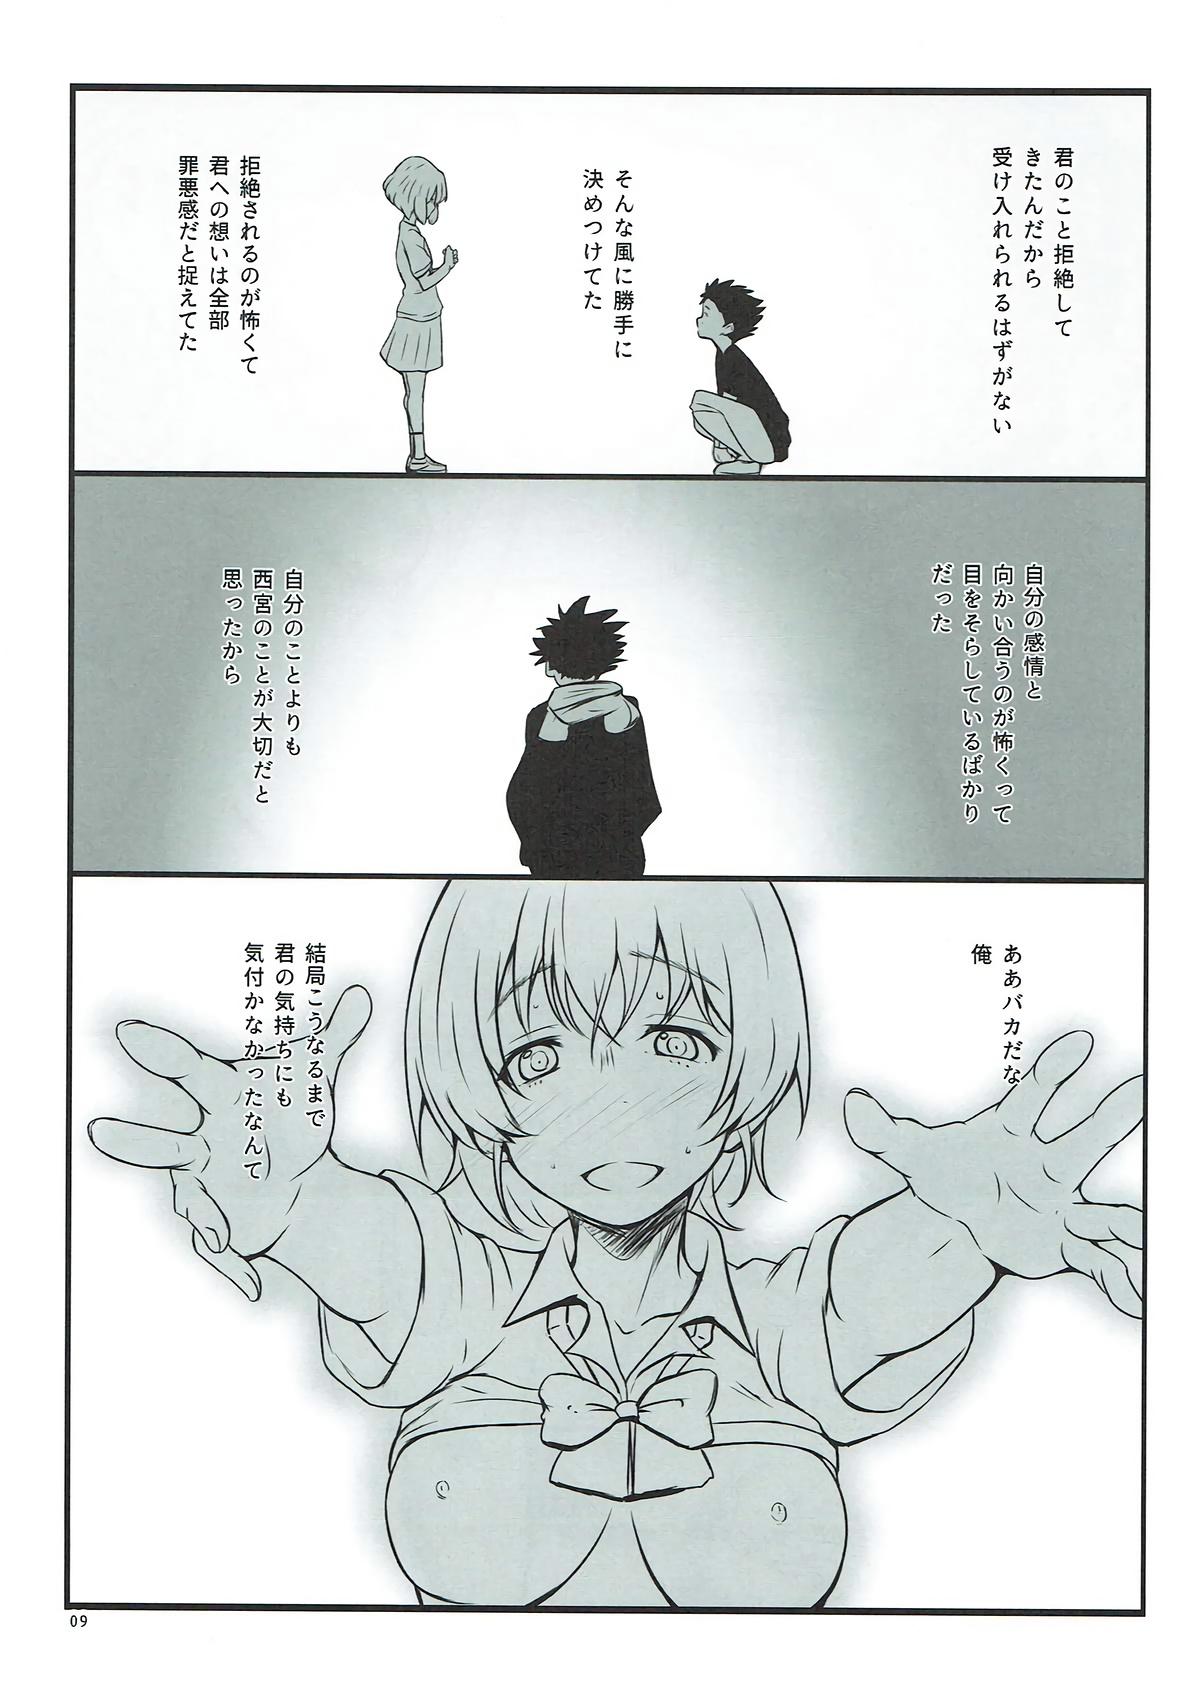 Amature Shimai no Koe - Koe no katachi Sub - Page 8